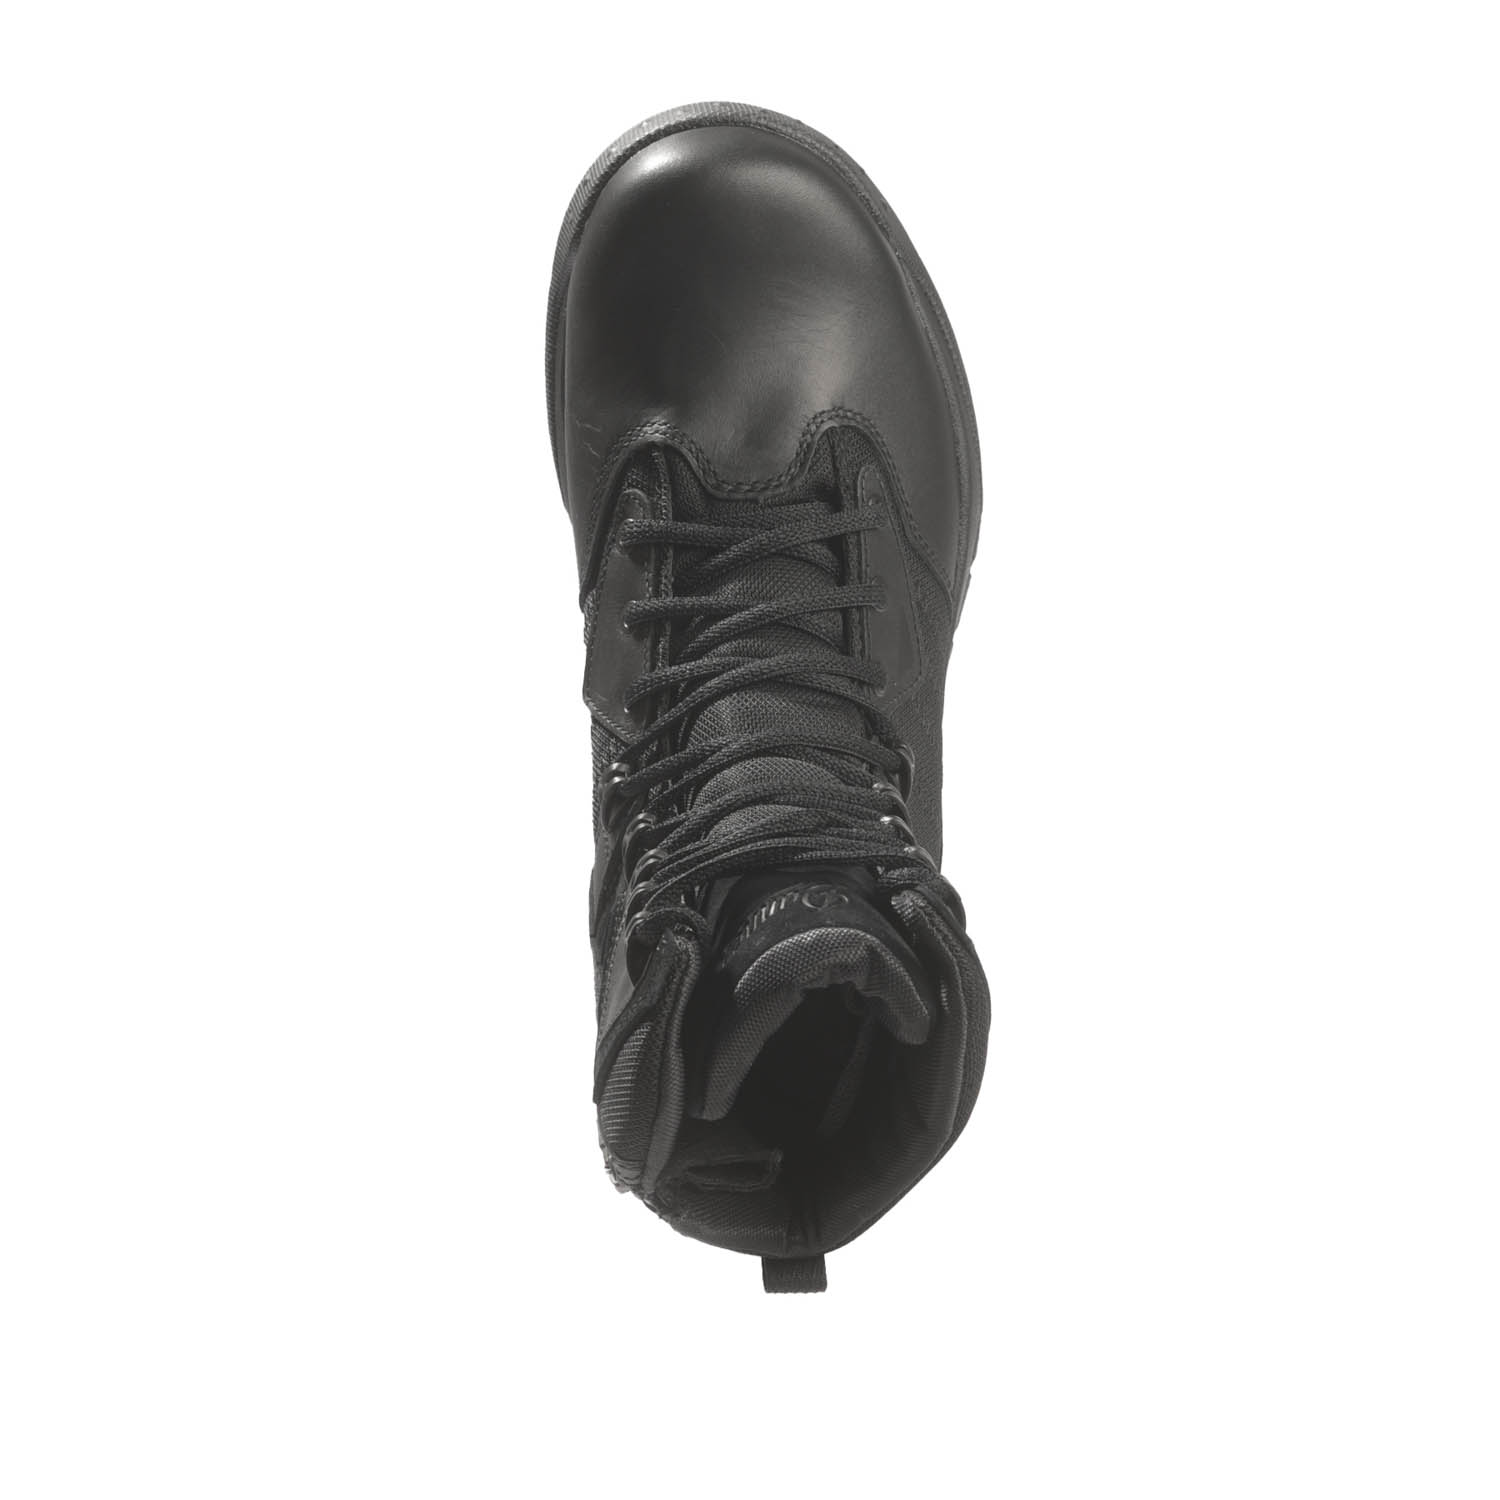 Danner 8" Instinct Tactical Side-Zip Boots